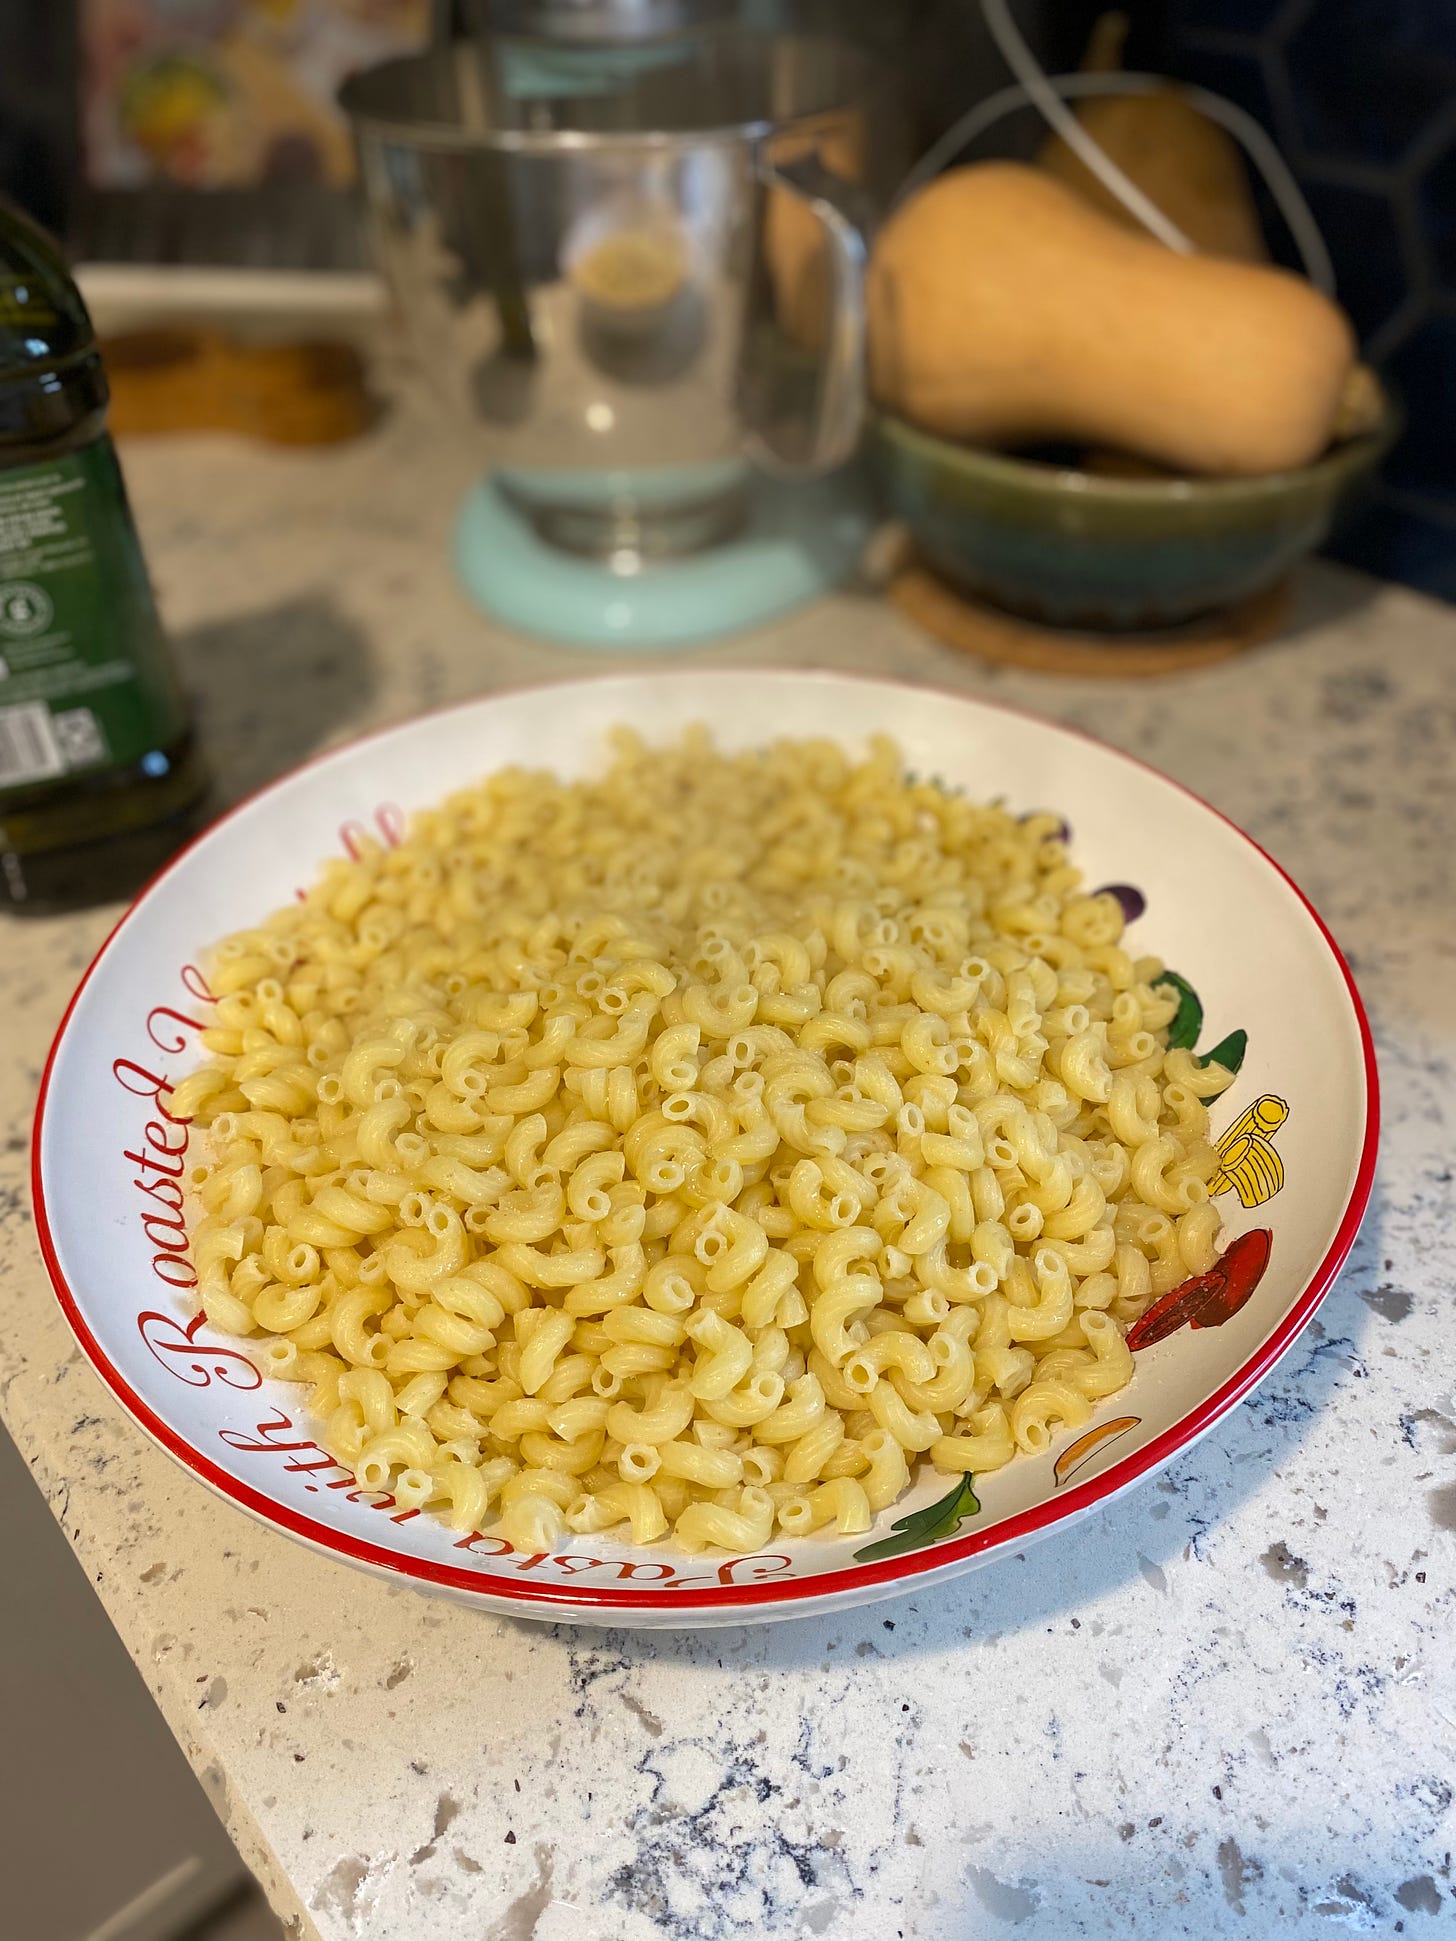 large bowl of macaroni pasta on countertop